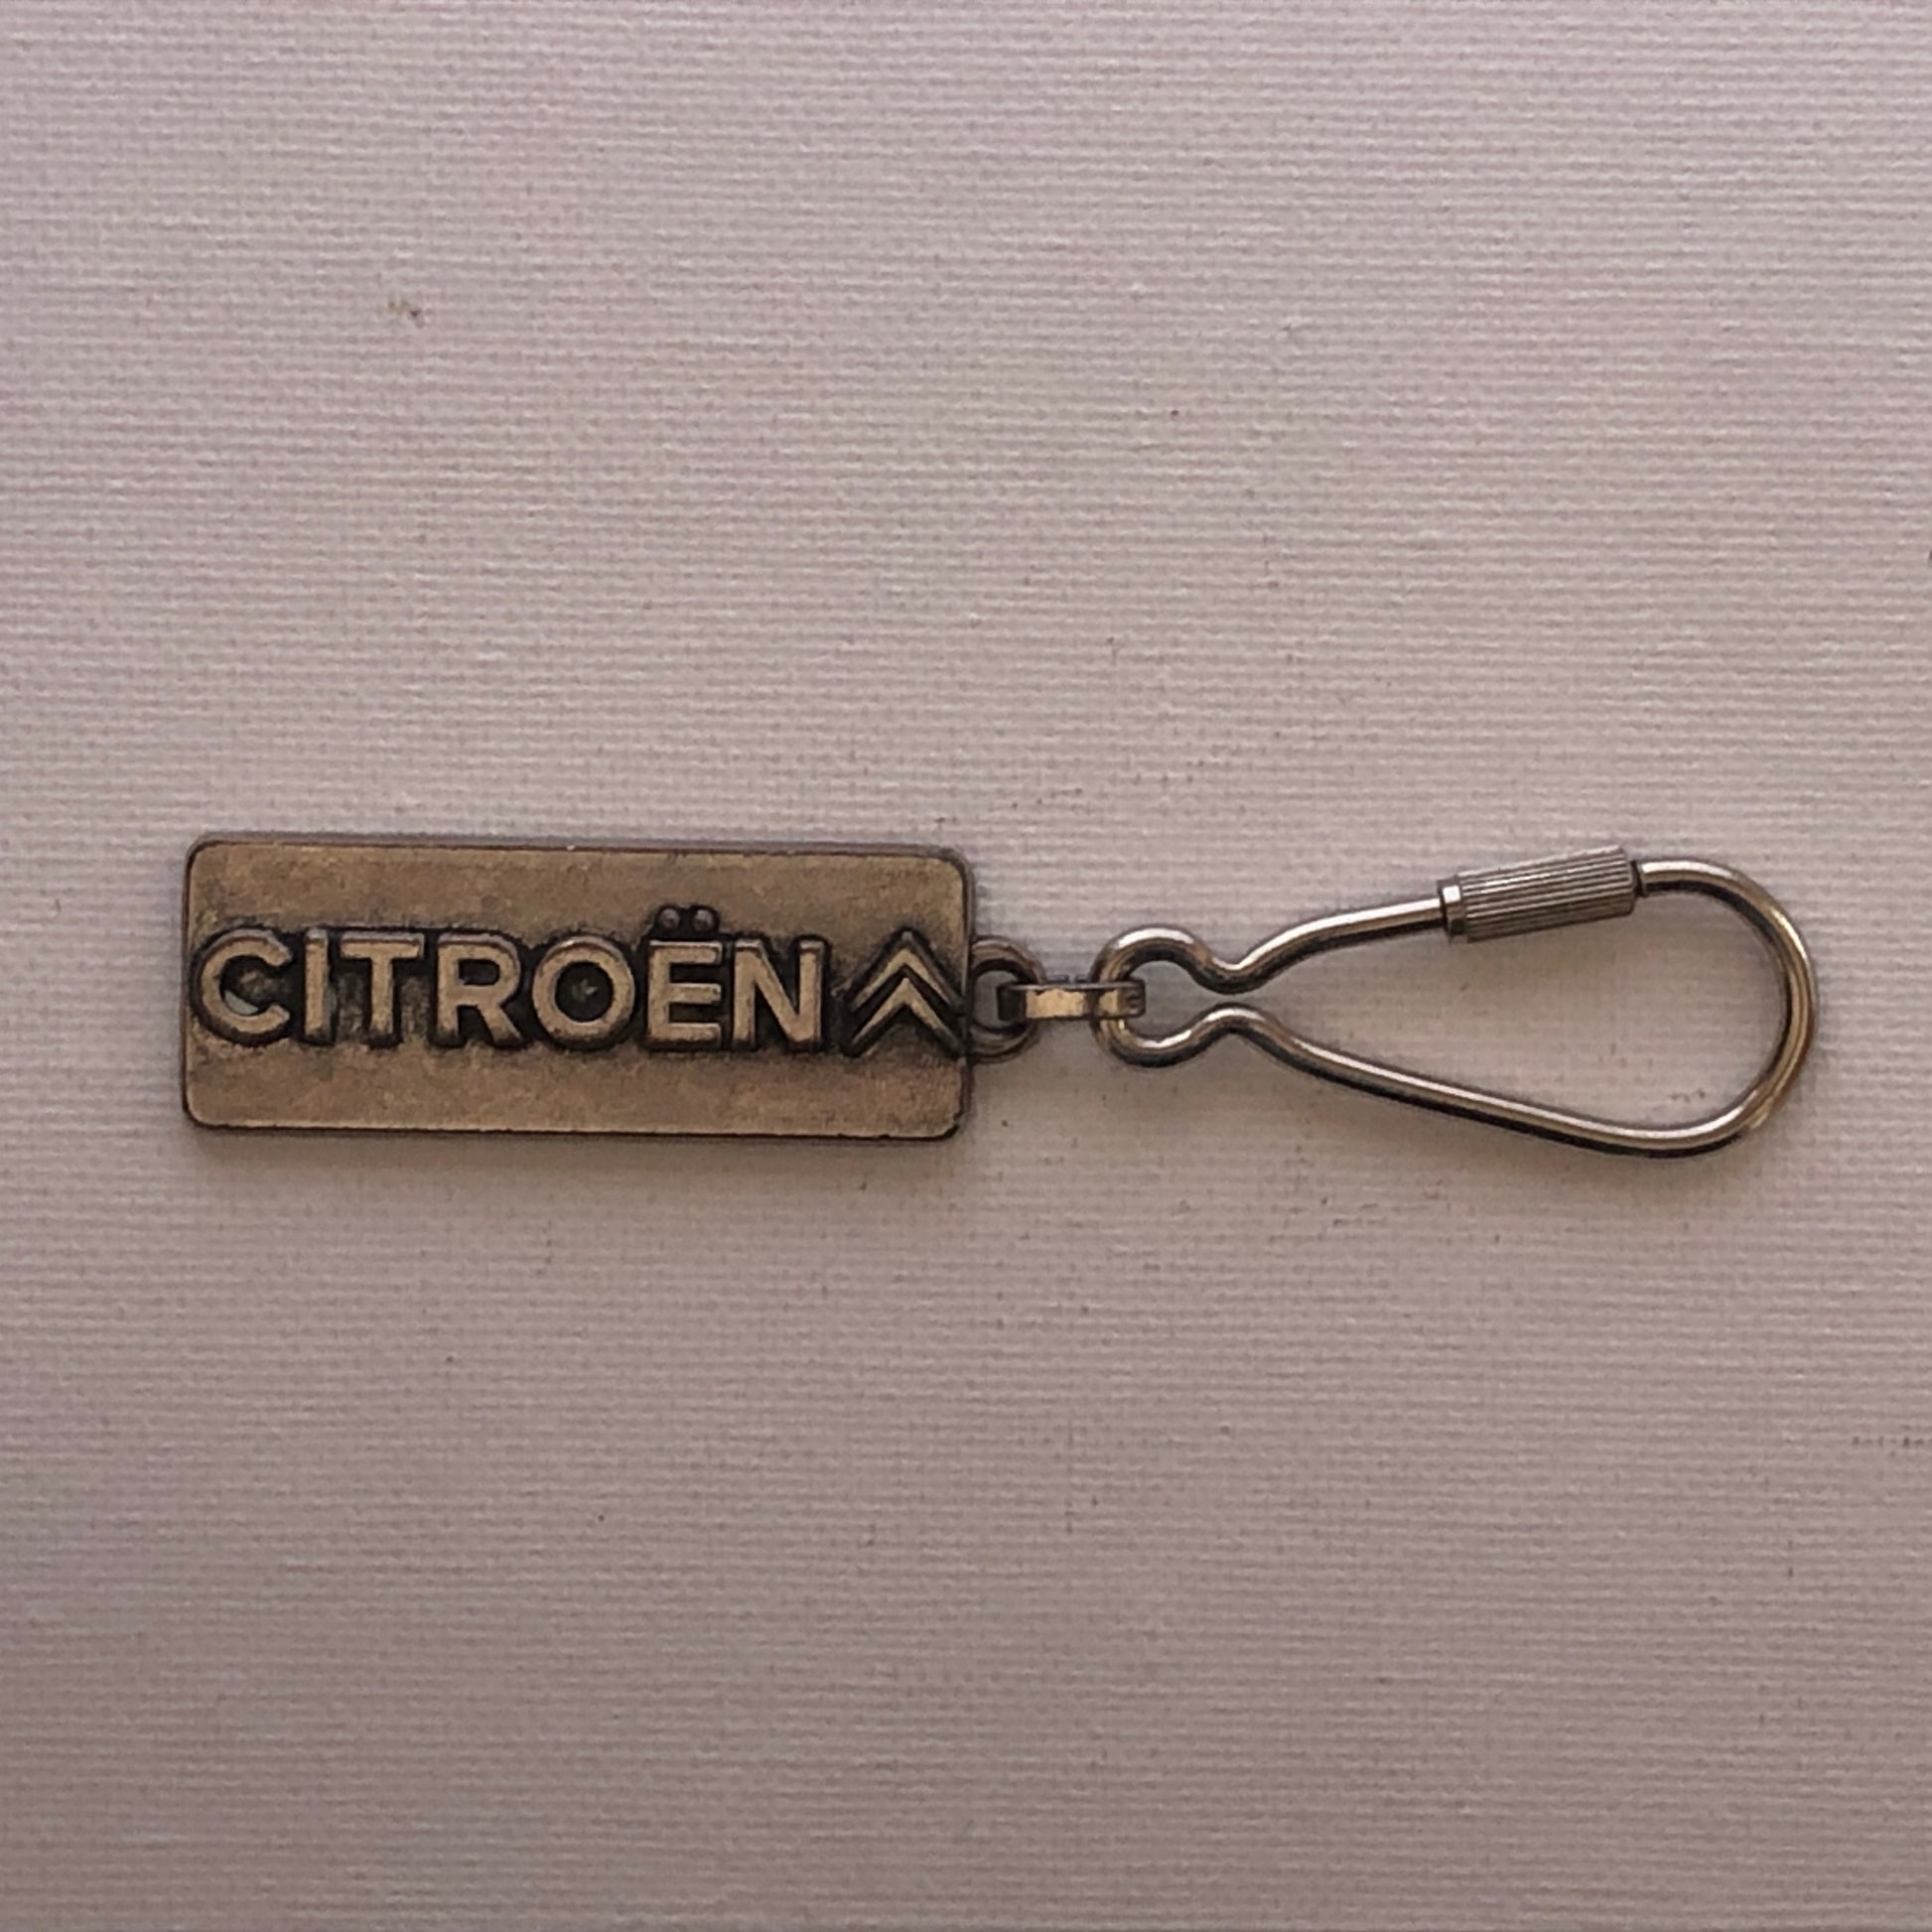 Citroën, Portachiavi con Stemma della Citroën, Anni e Materiali Differenti